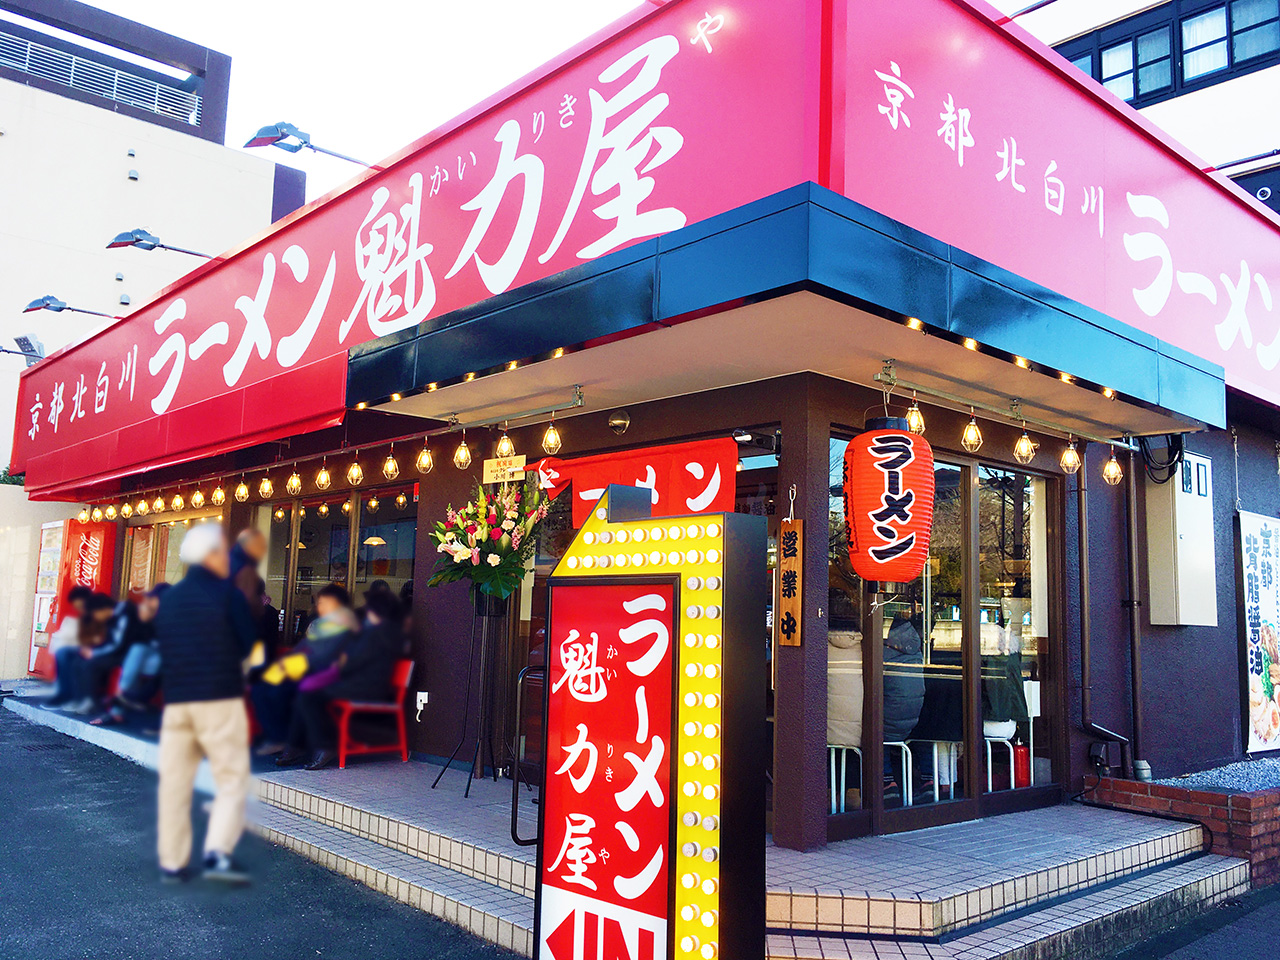 京都北白川 ラーメン魁力屋 多摩ニュータウン通り店がオープンしました